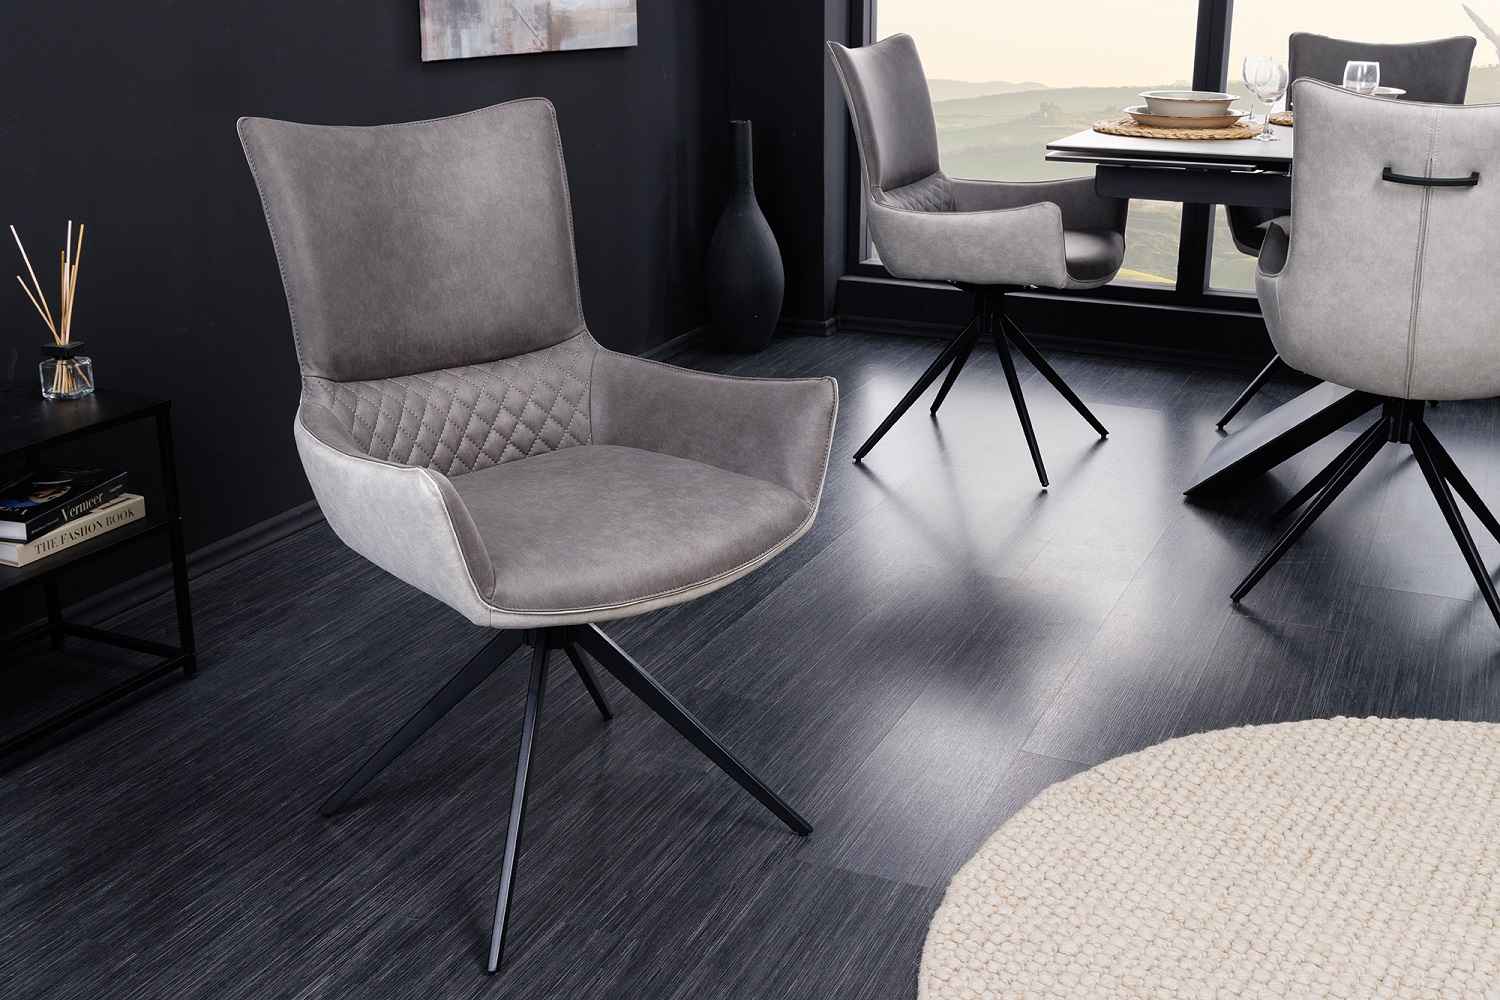 LuxD Designová otočná židle Wendell šedá / světle šedá